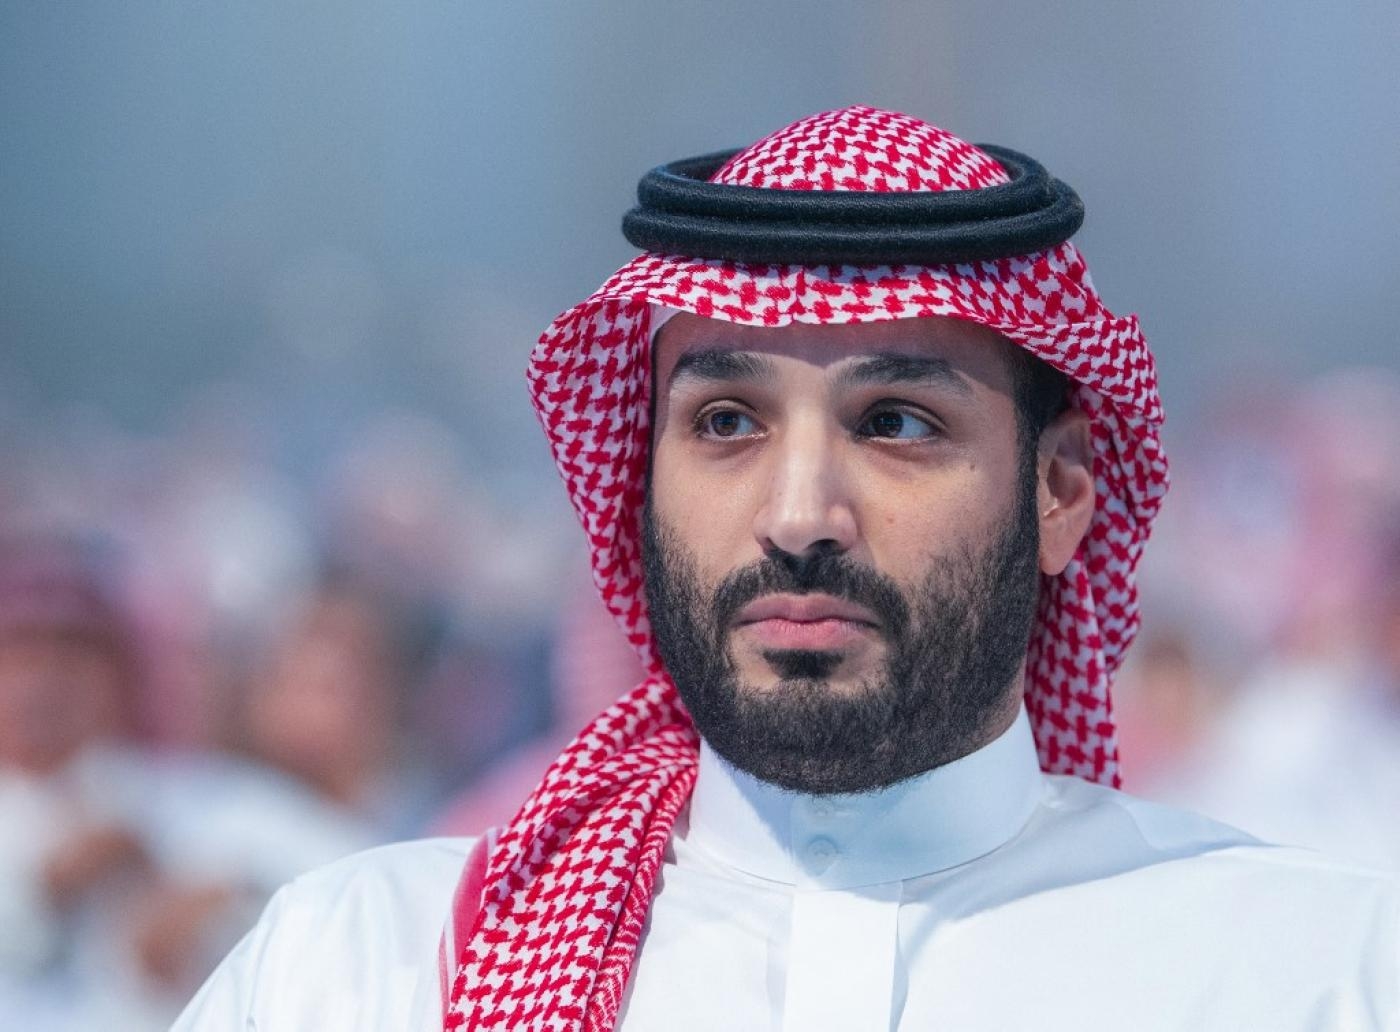 Le prince héritier d’Arabie saoudite Mohammed ben Salmane assiste à une session de la conférence annuelle Future Investment Initiative (FII) à Riyad, le 26 octobre 2021 (AFP)